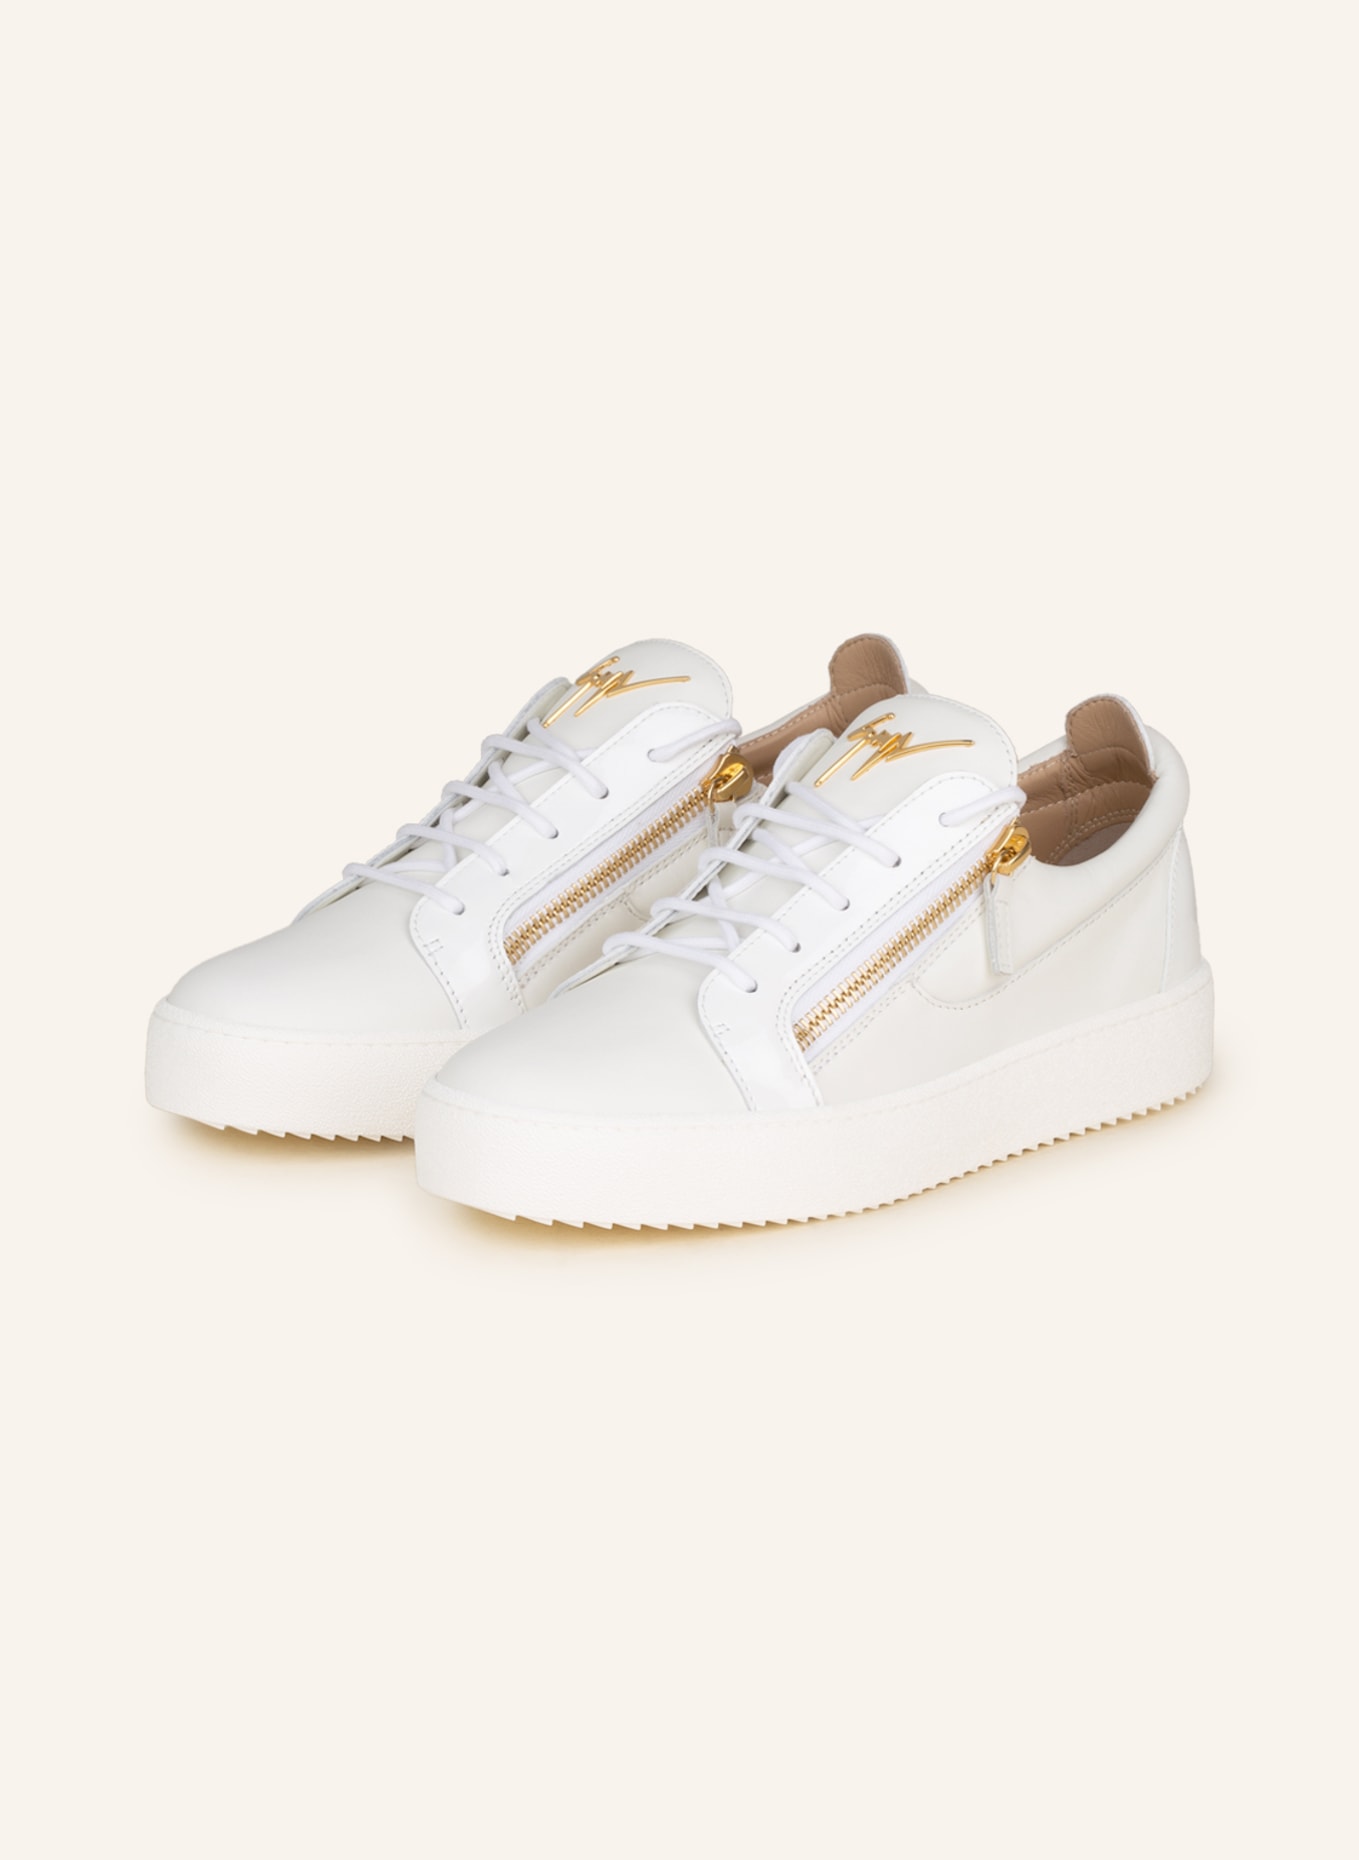 GIUSEPPE ZANOTTI DESIGN Sneakers FRANKIE in white | Breuninger